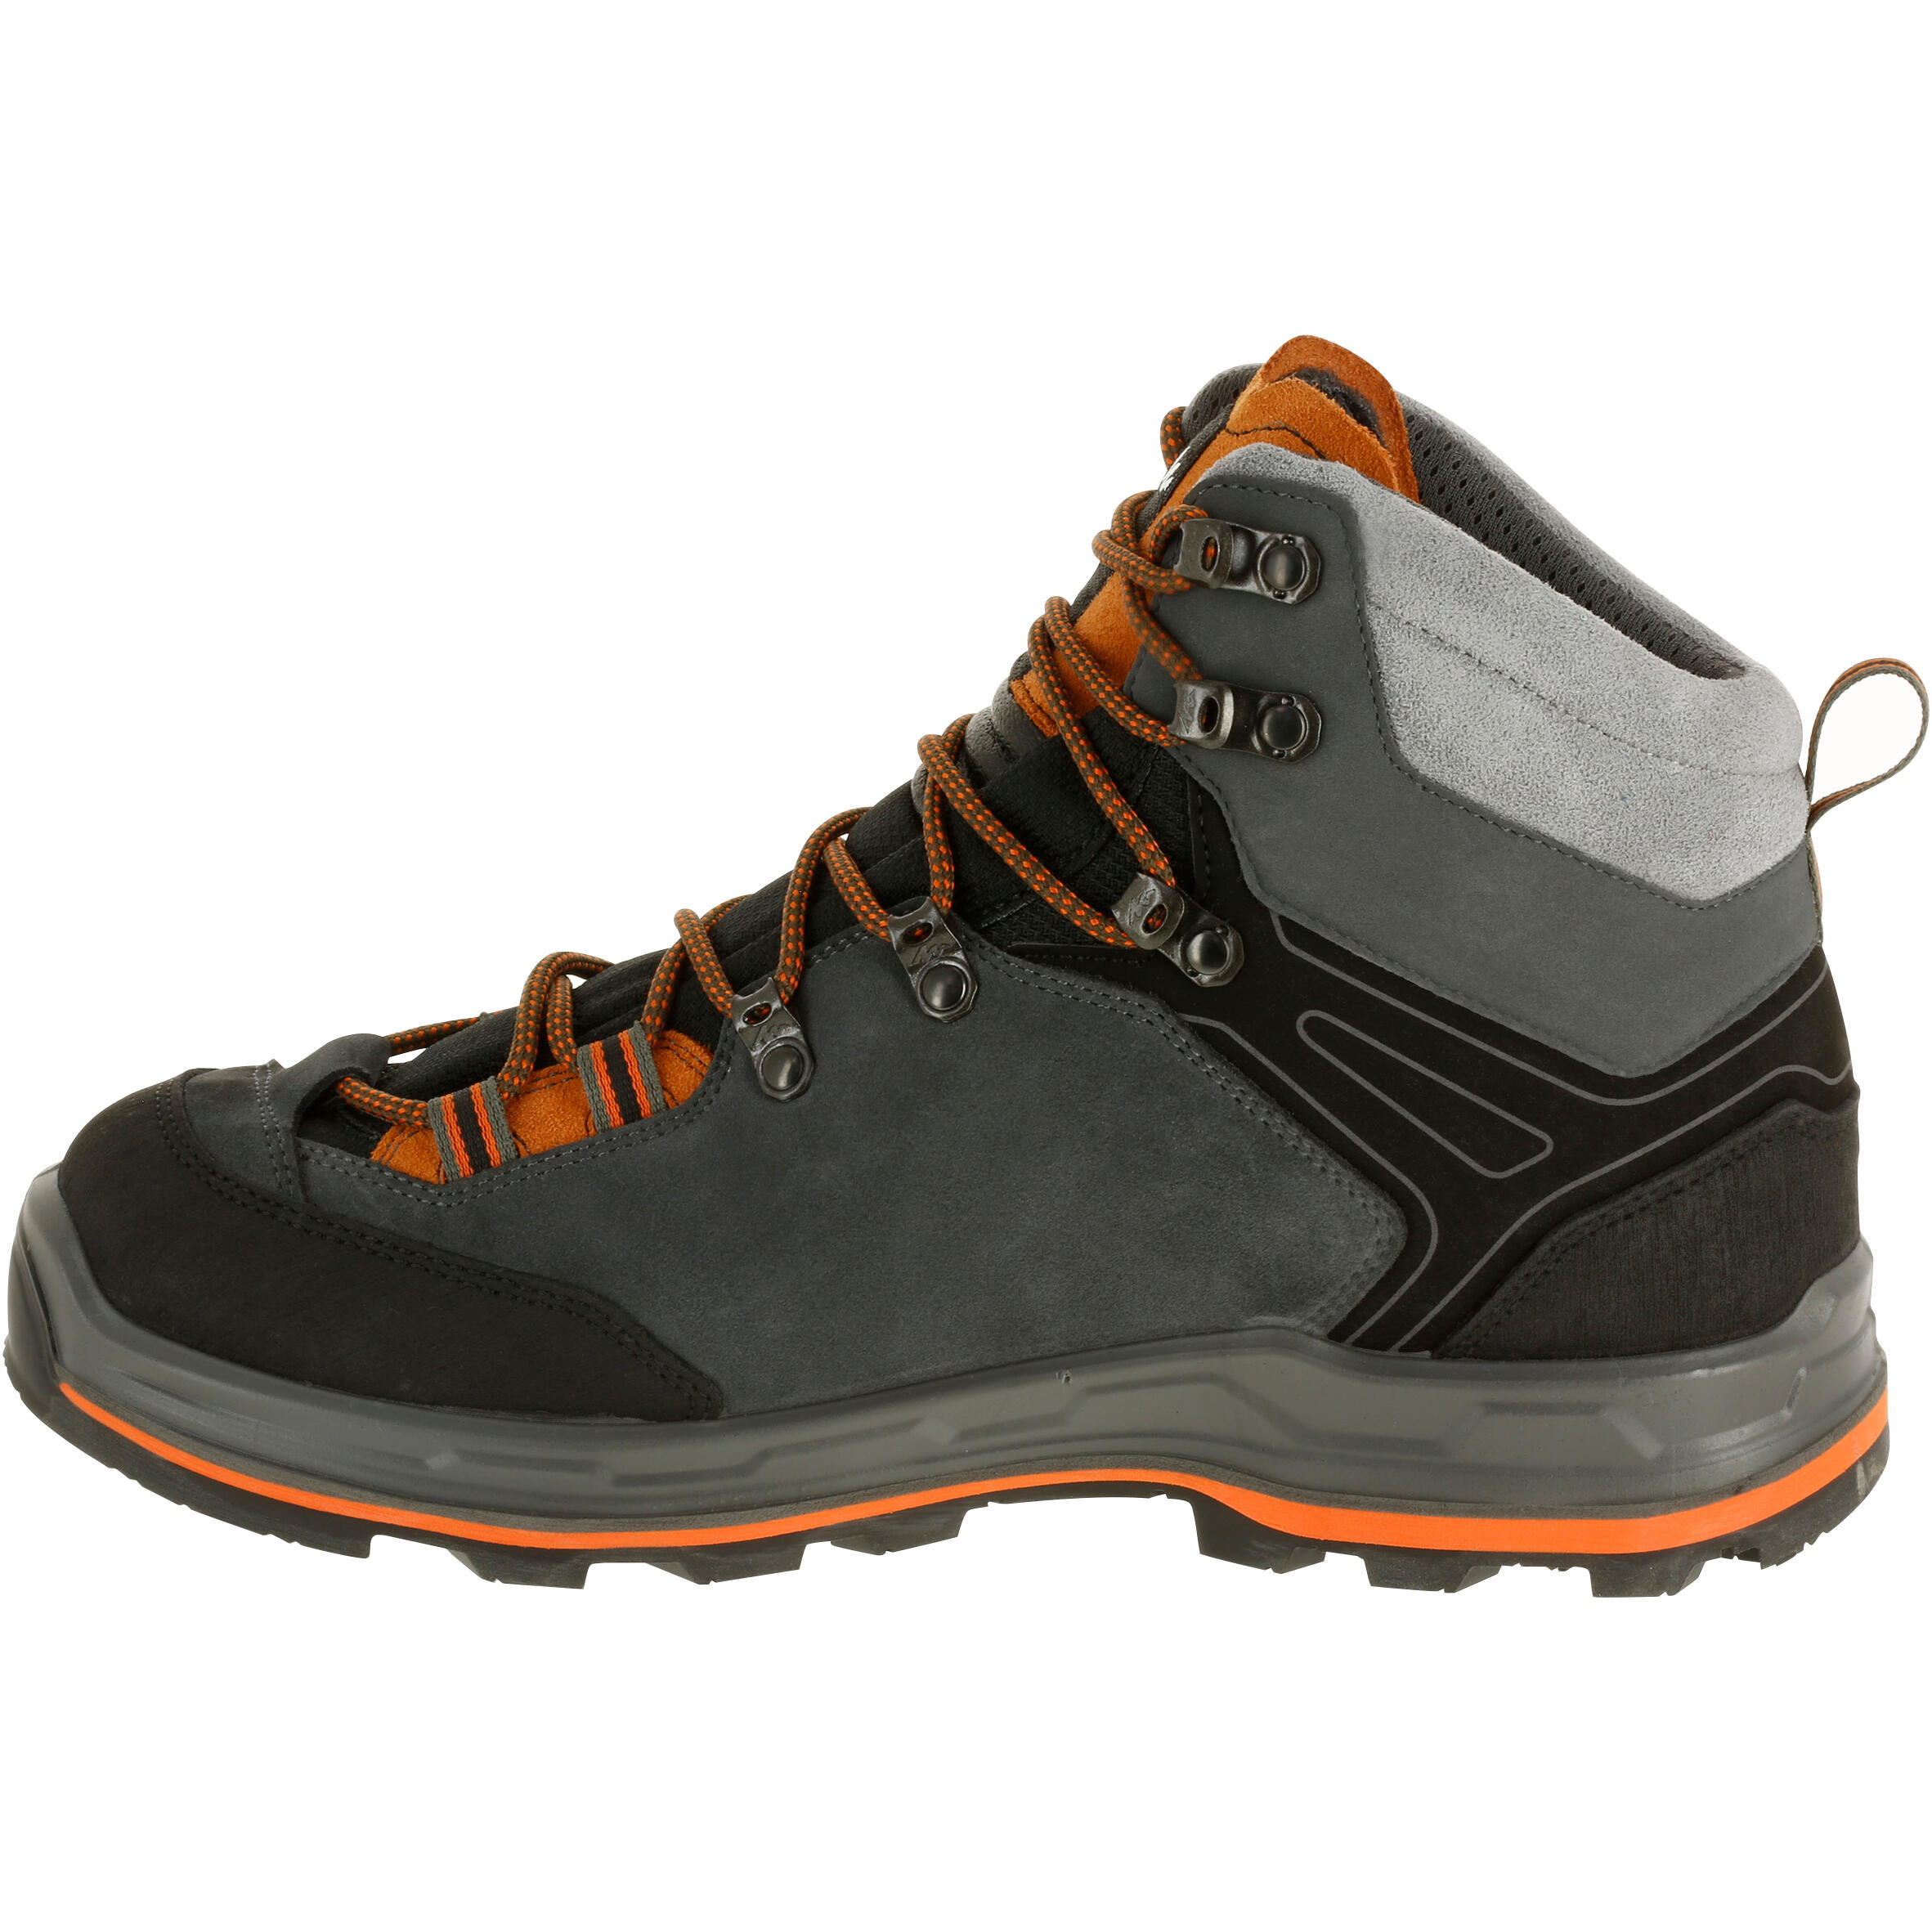 mountain trekking boots